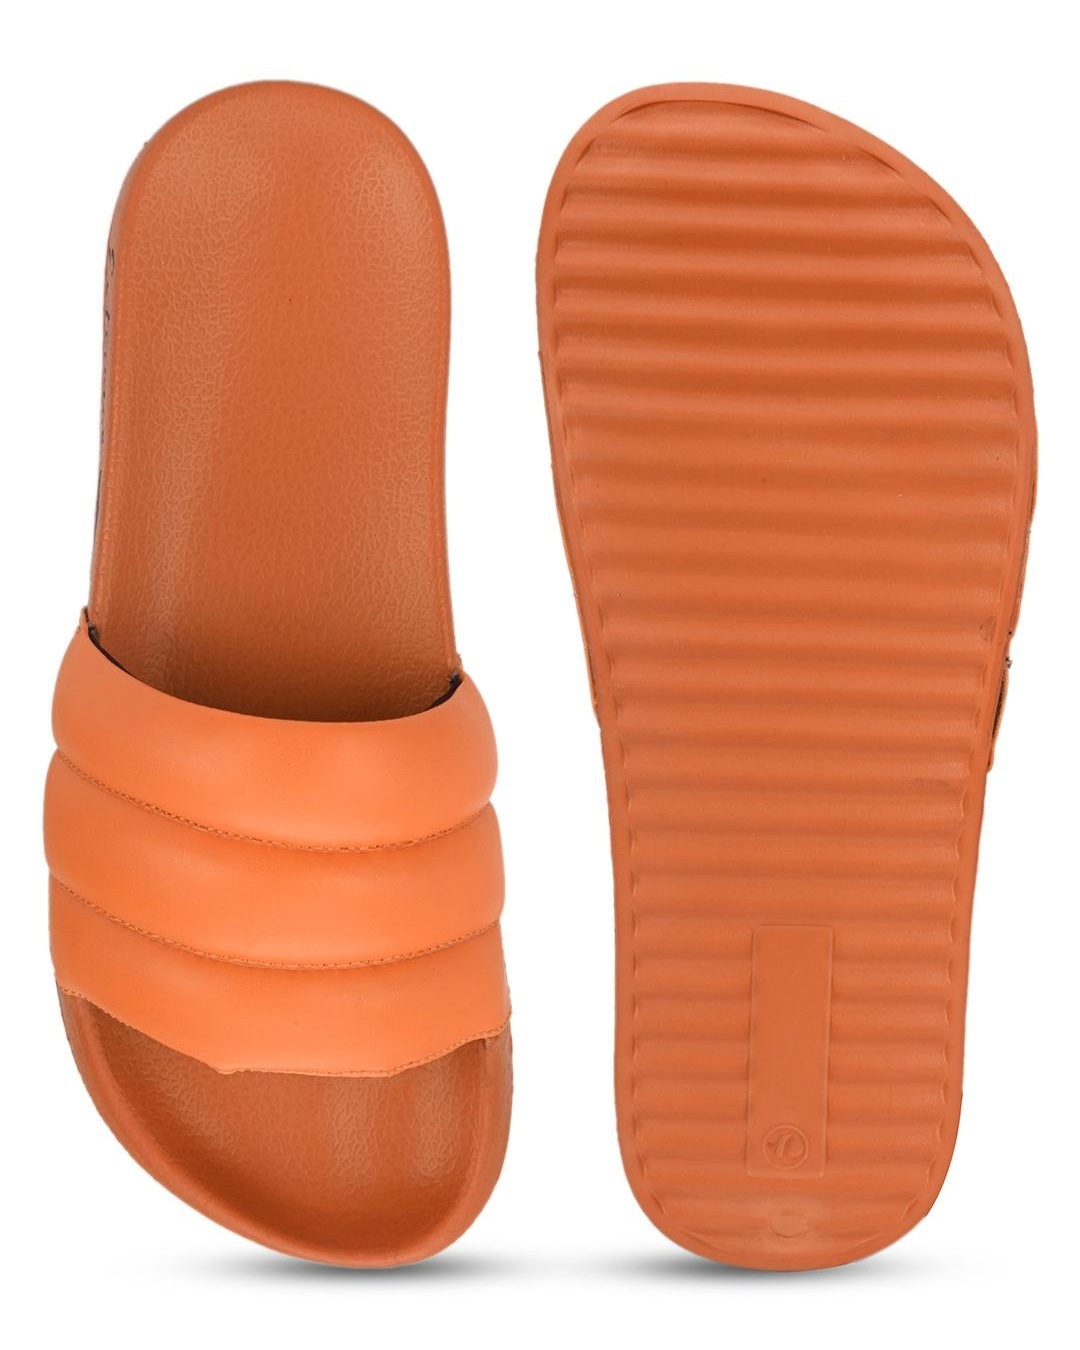 Buy Men's Orange Sliders Online in India at Bewakoof